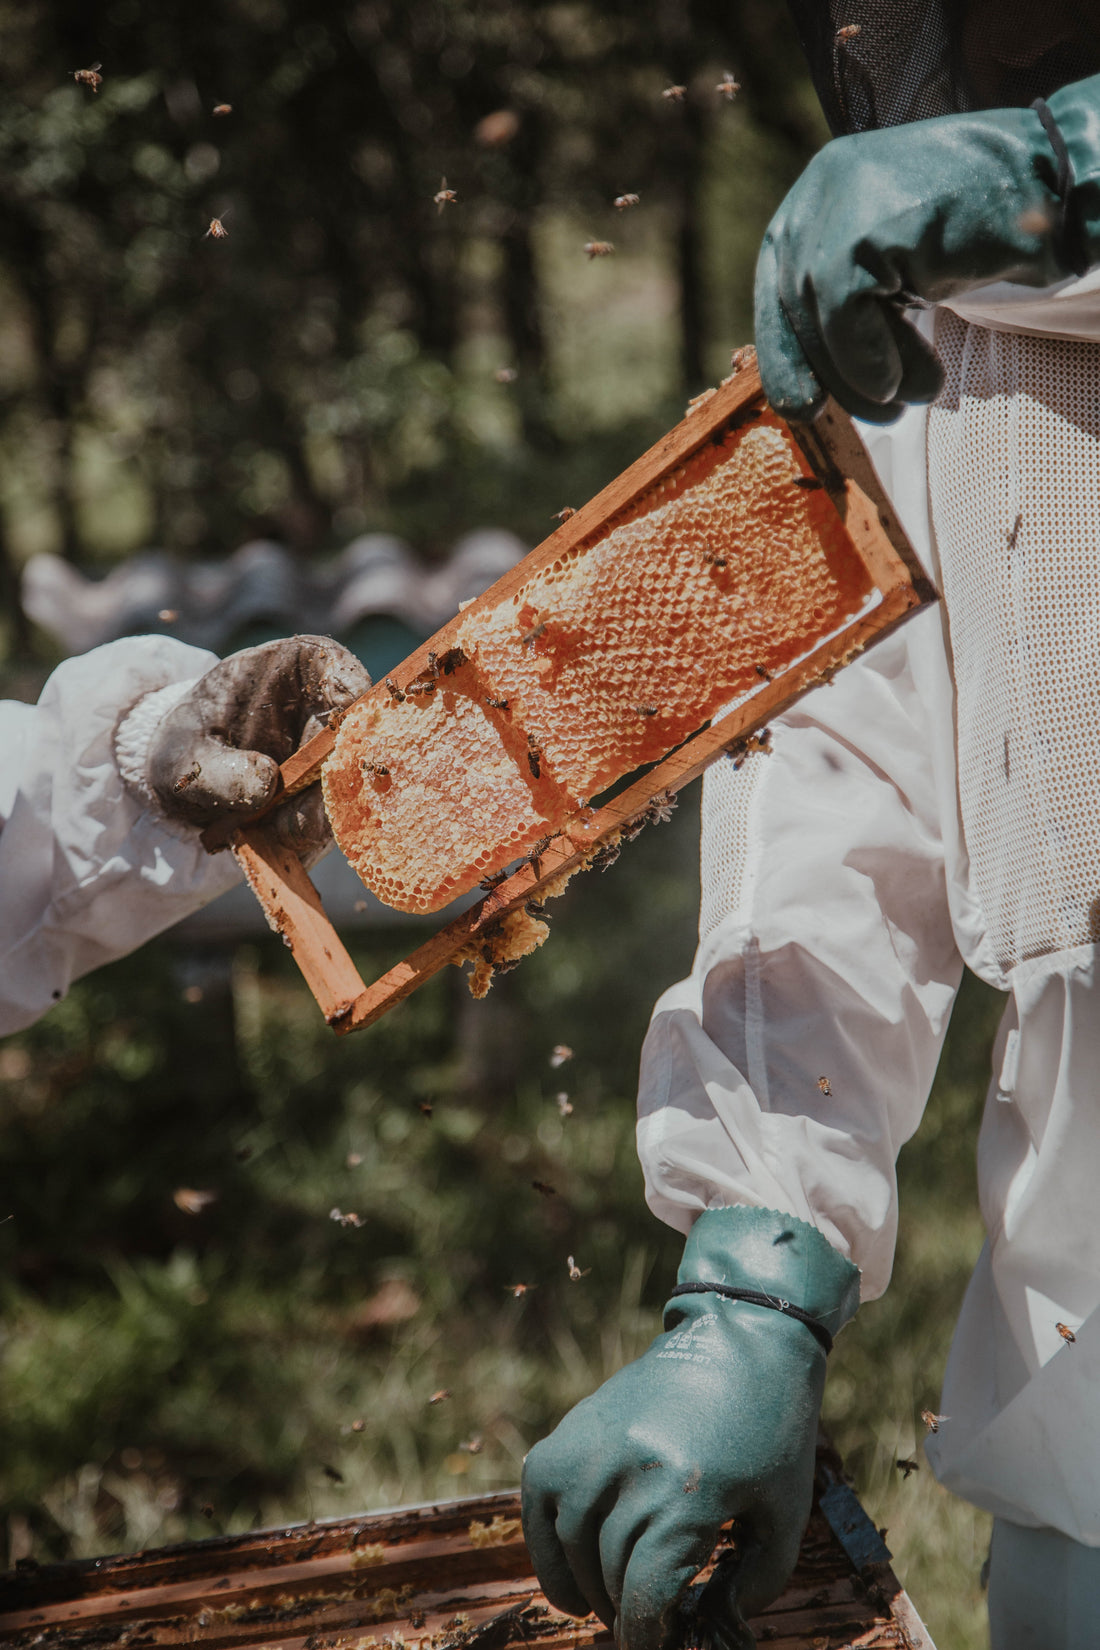 The Honey Harvest